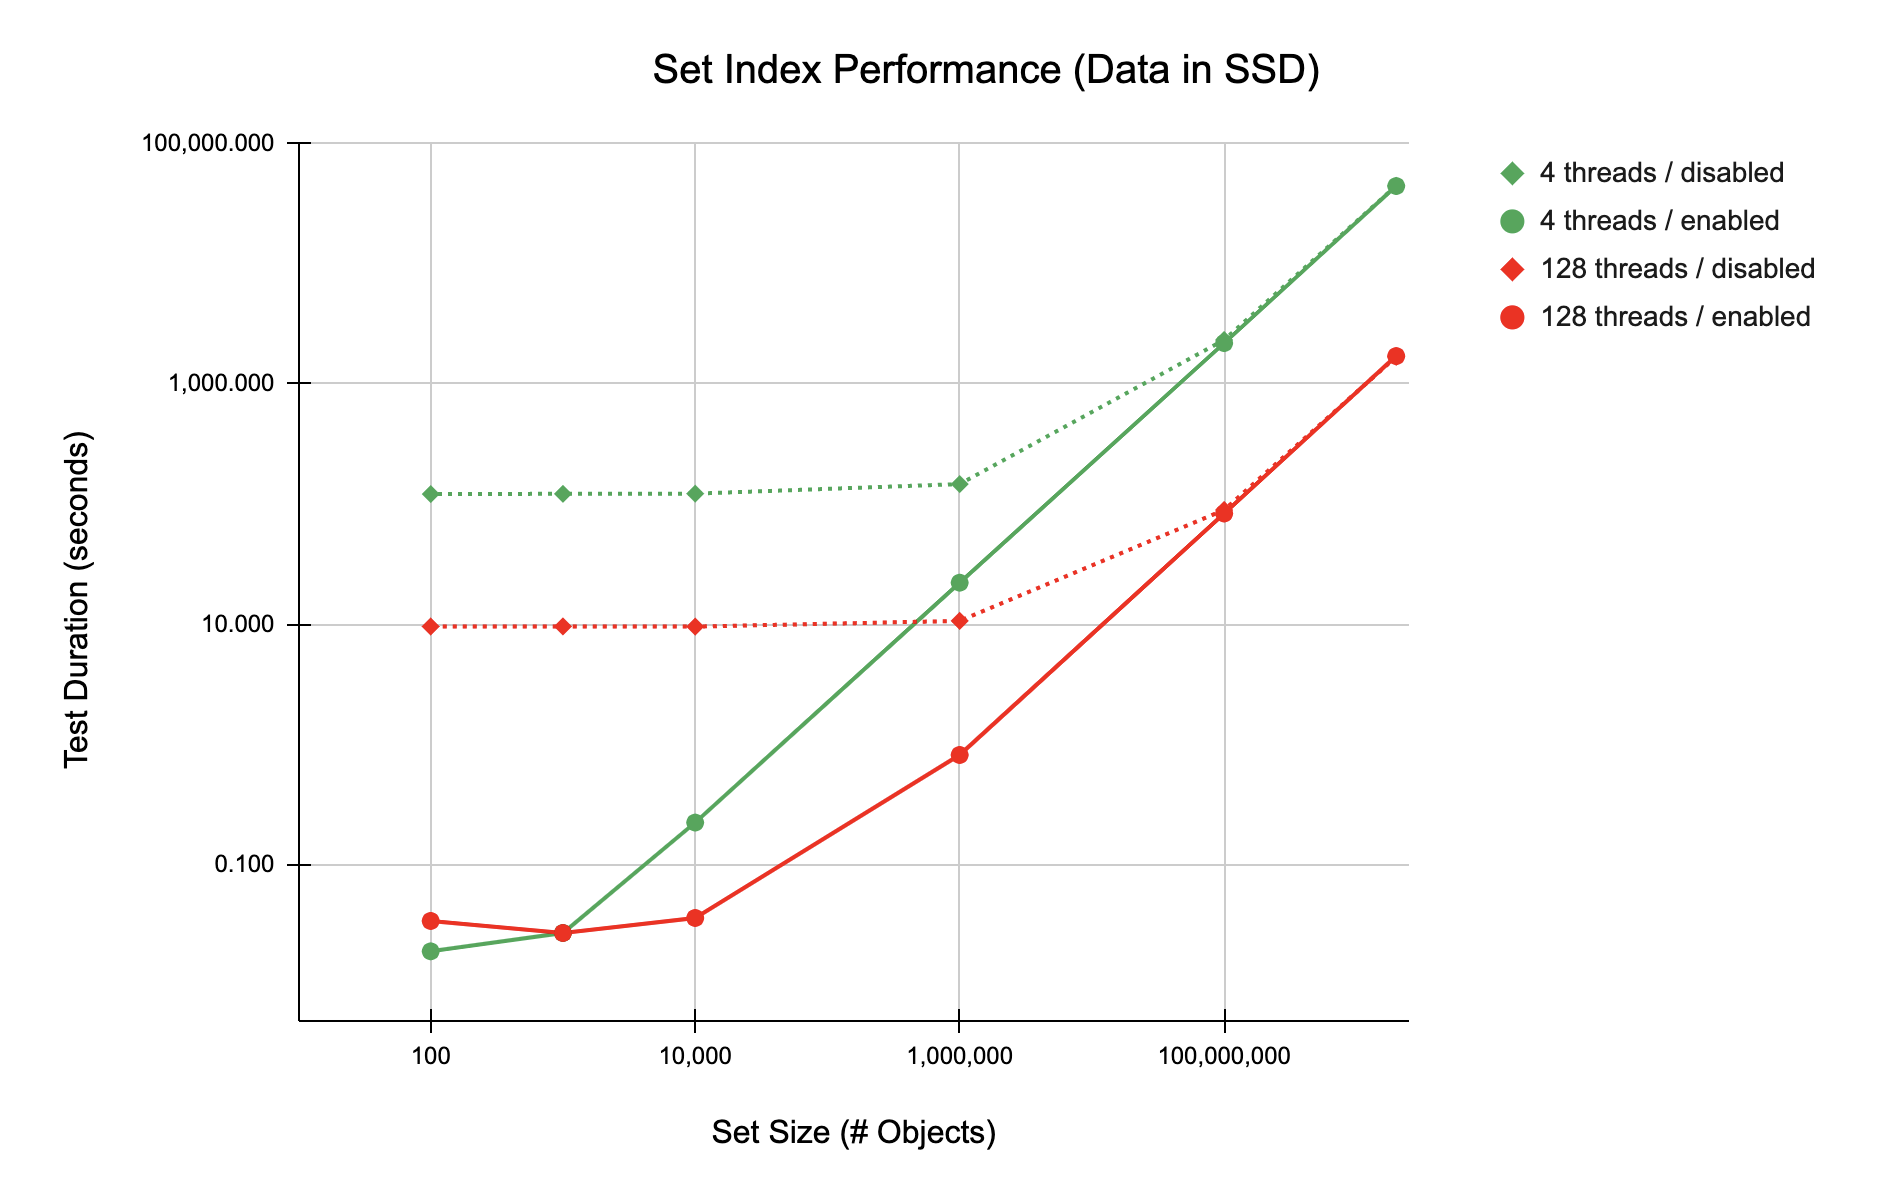 Figure: Data in SSD